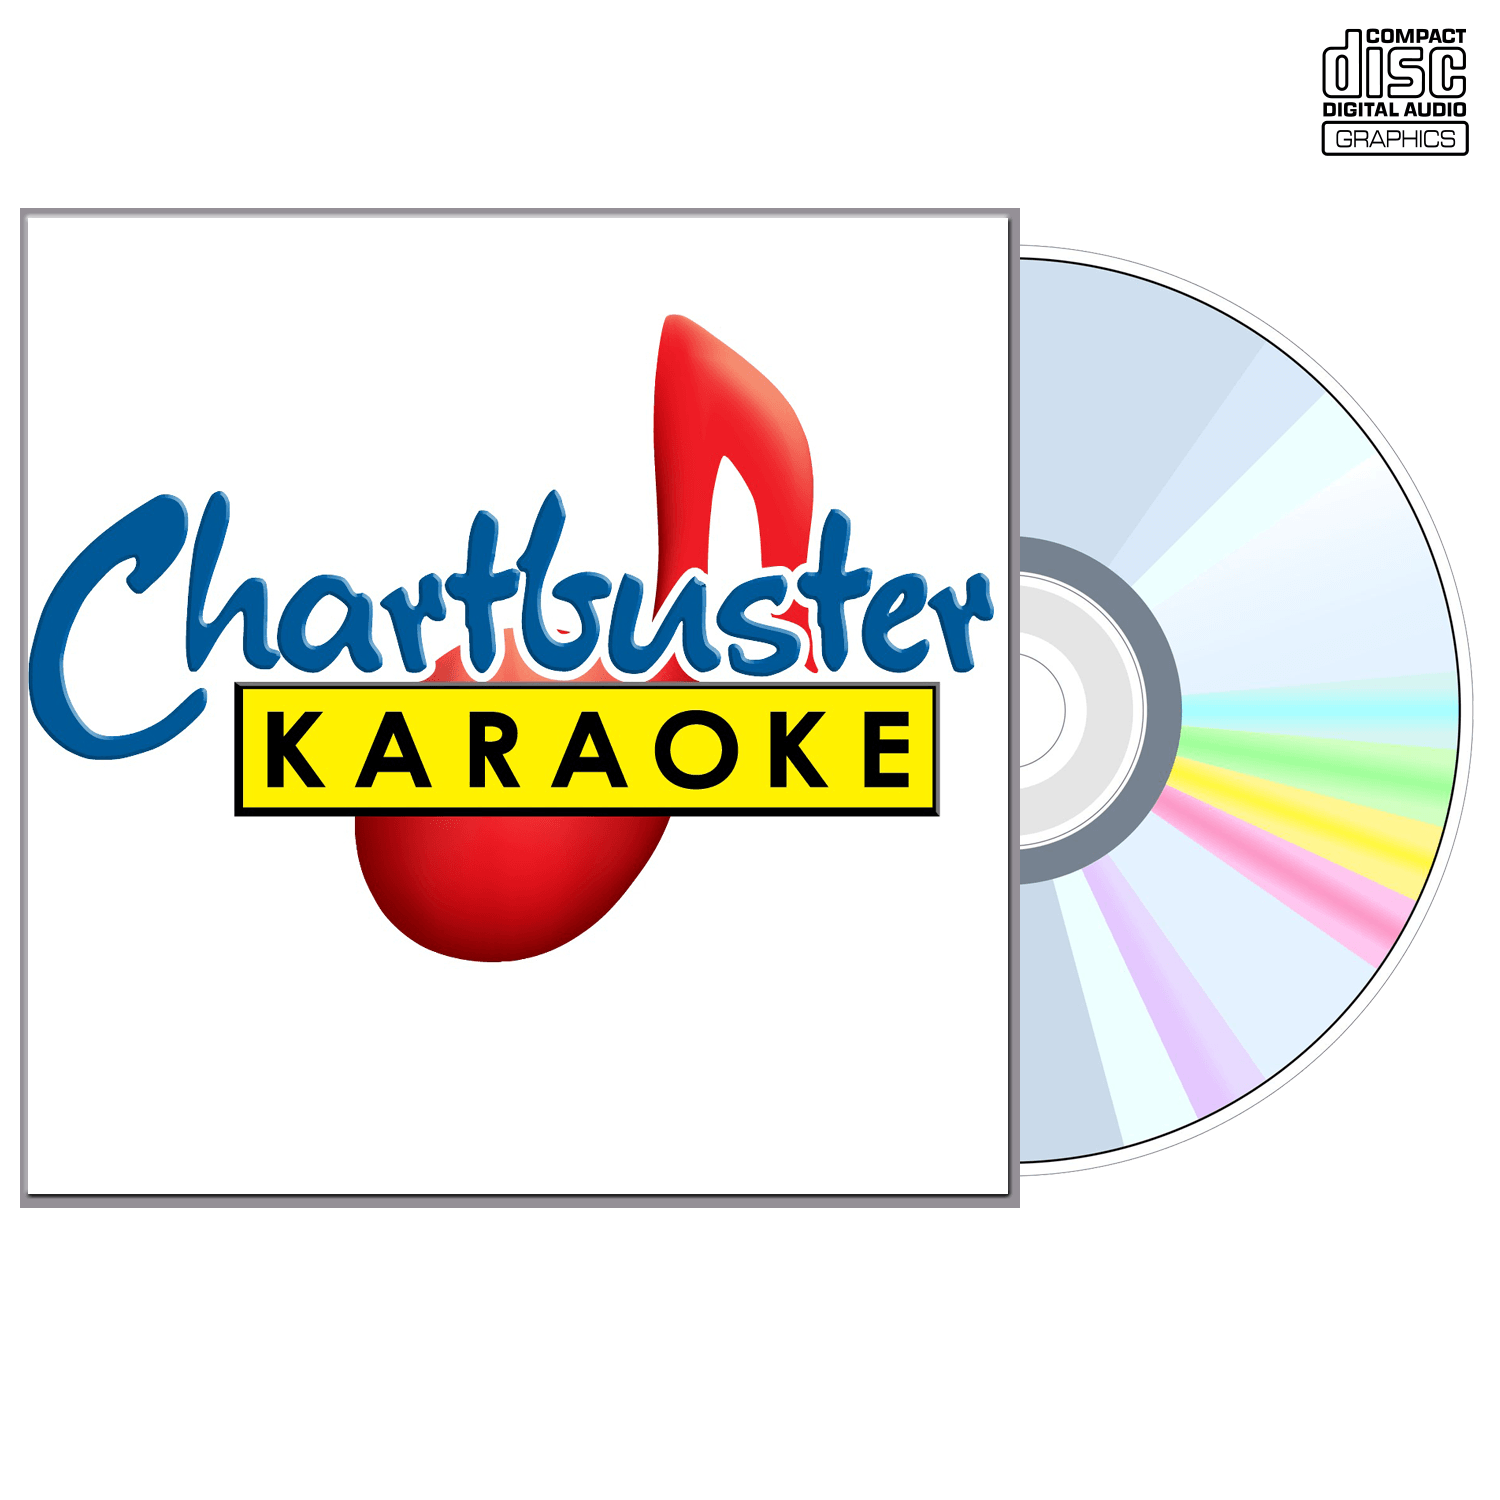 N Sync Vol 2 - CD+G - Chartbuster Karaoke - Karaoke Home Entertainment